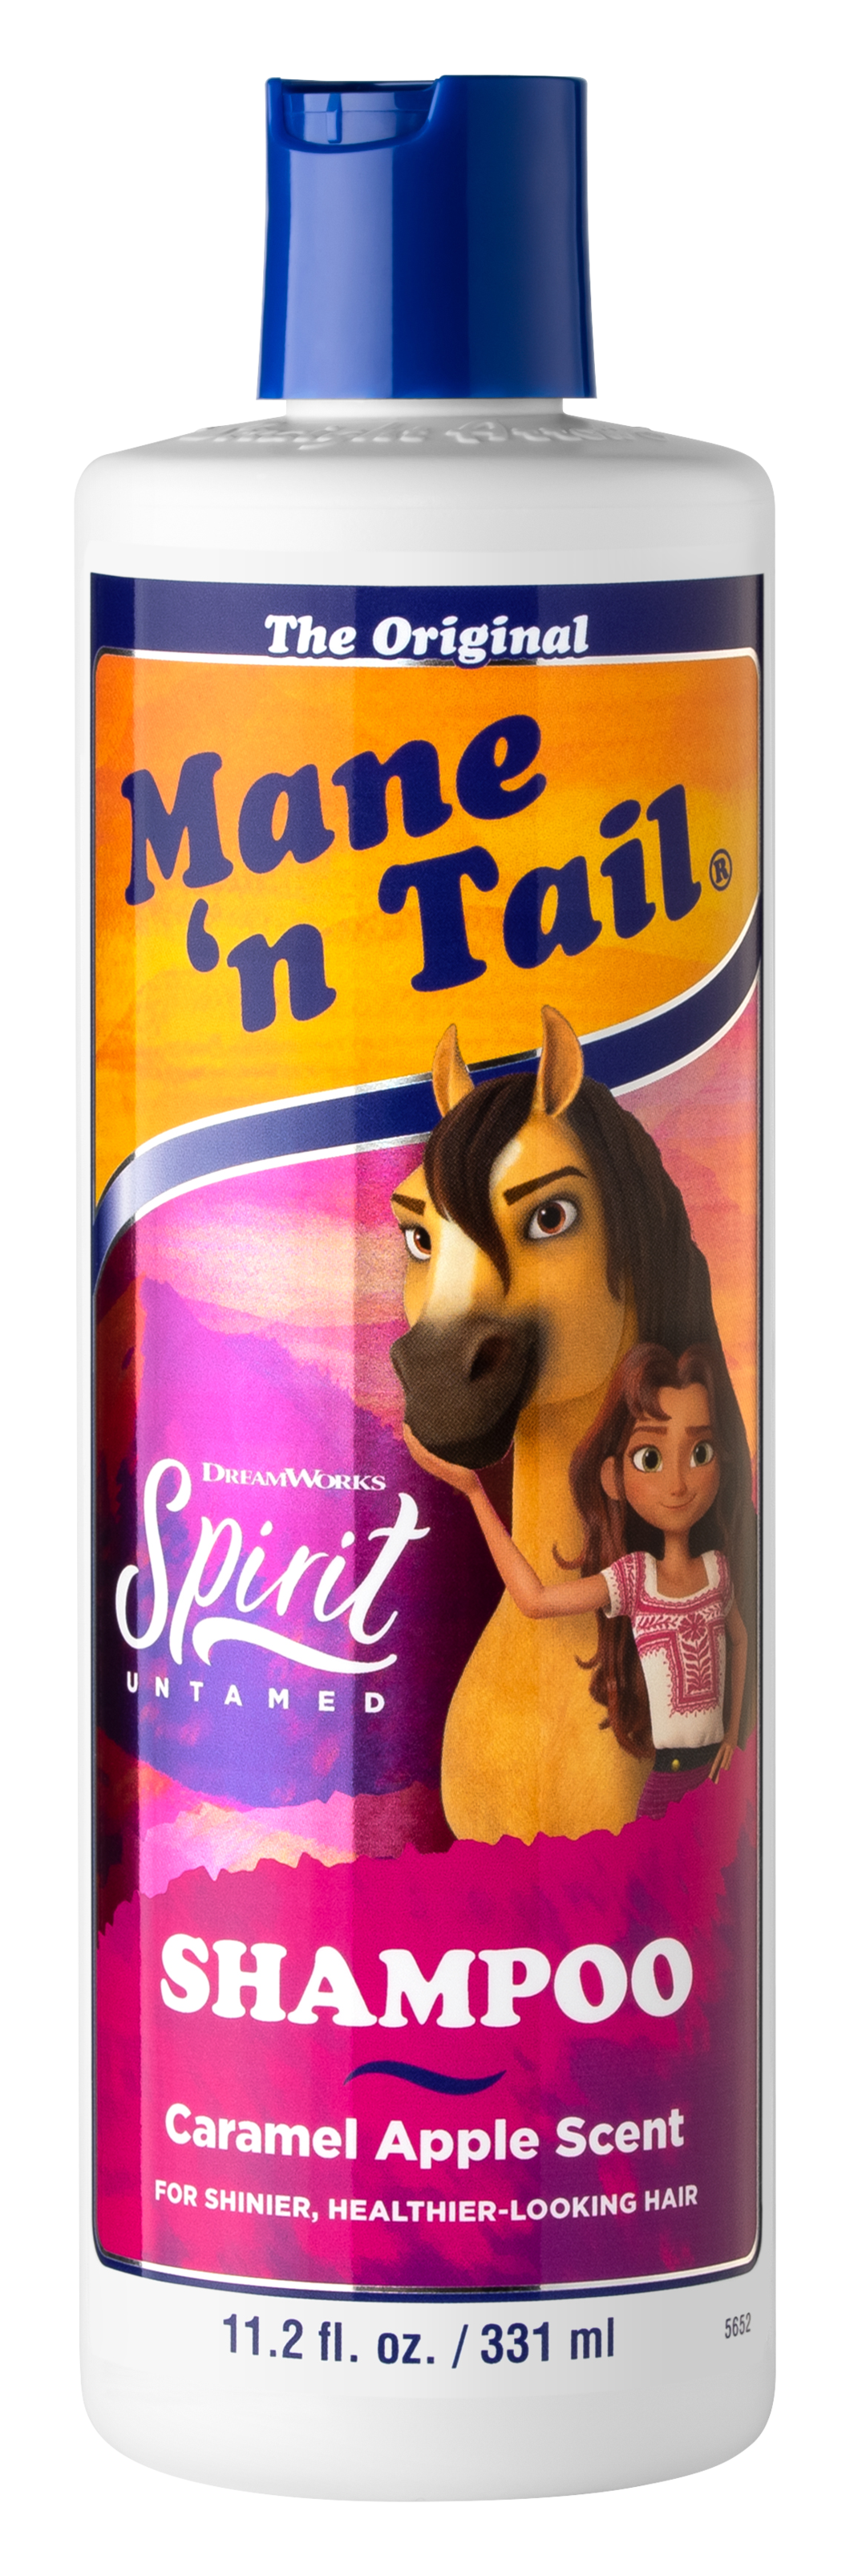 Mane 'n Tail Spirit Untamed Shampoo